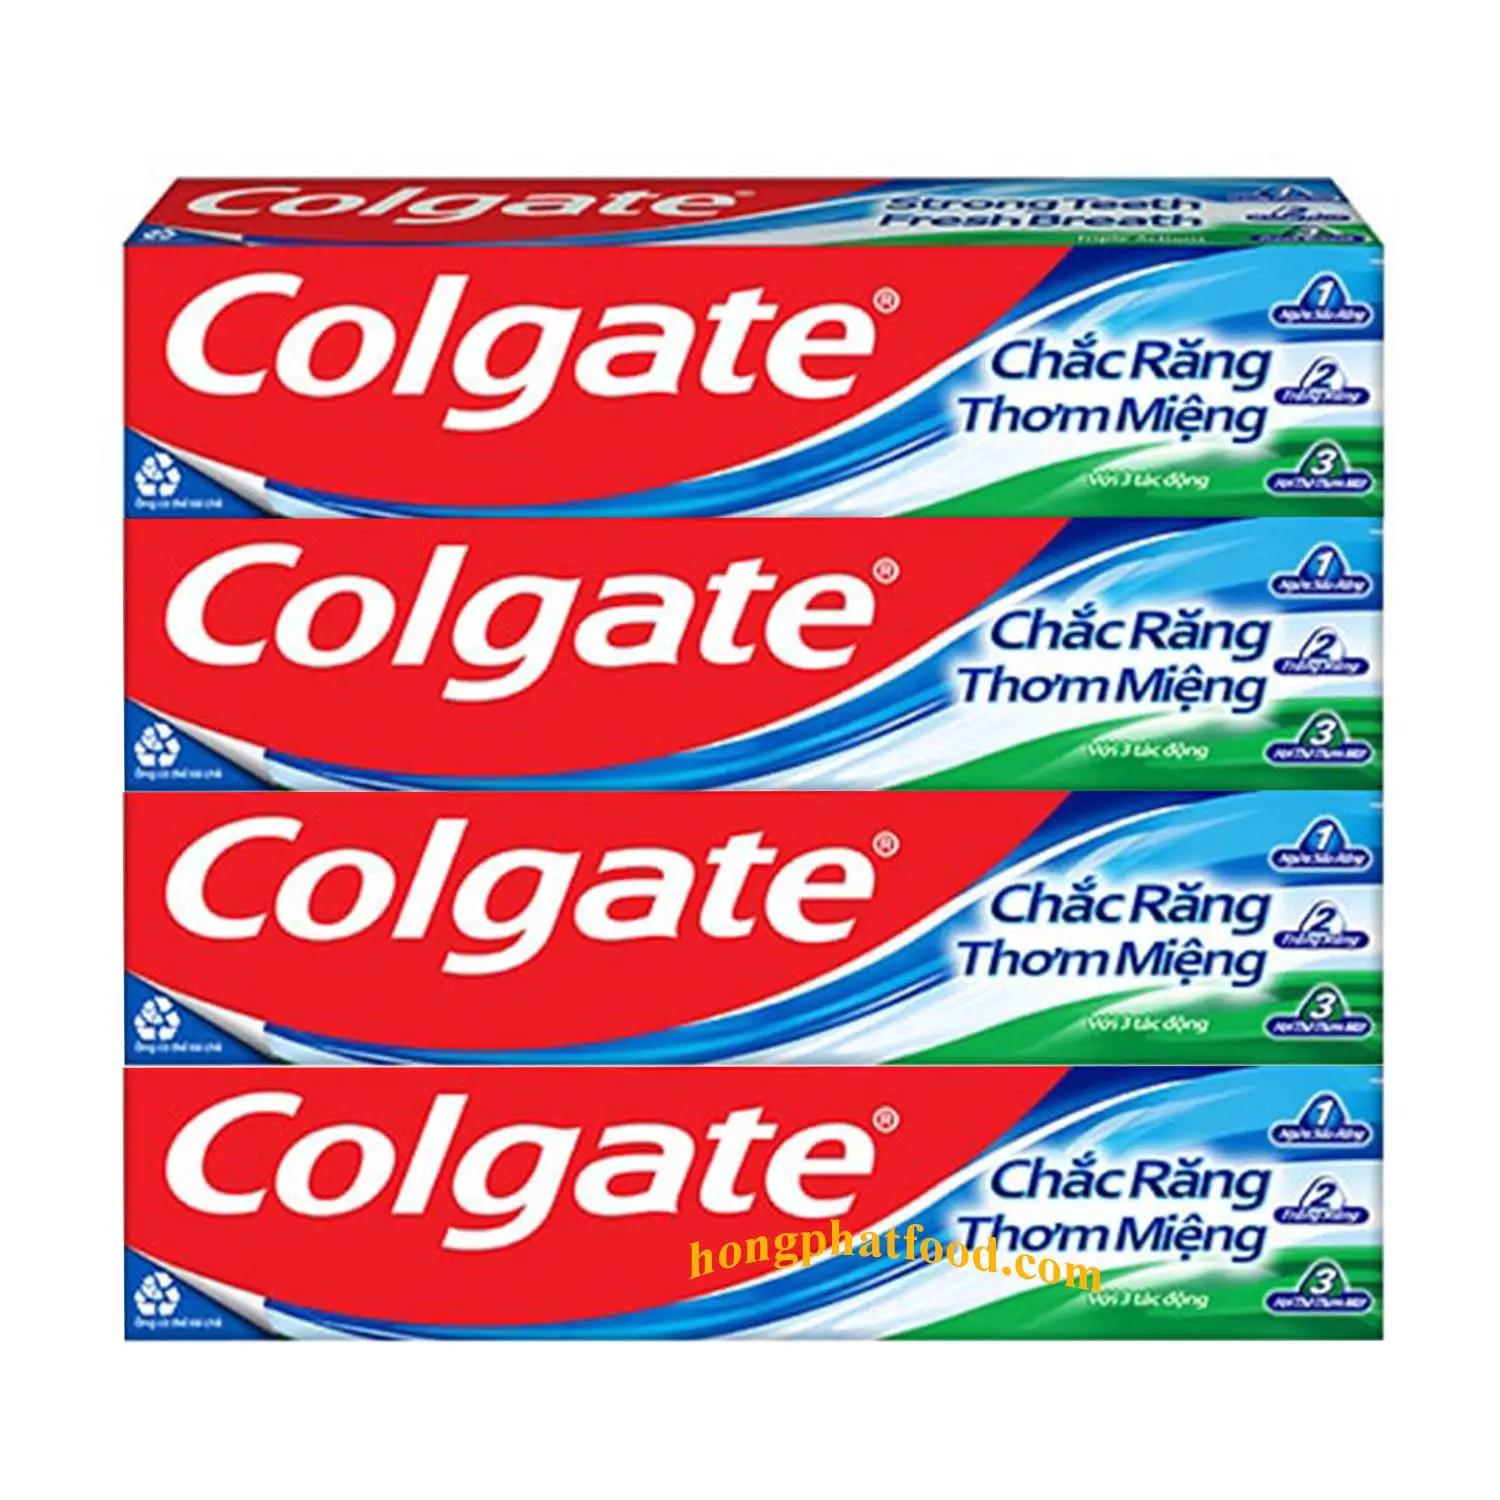 Pasta de dientes para exportación Colgatee pasta de dientes de triple acción 180gx48 tubos de Vietnam eliminar manchas fortalecer los dientes pasta de dientes